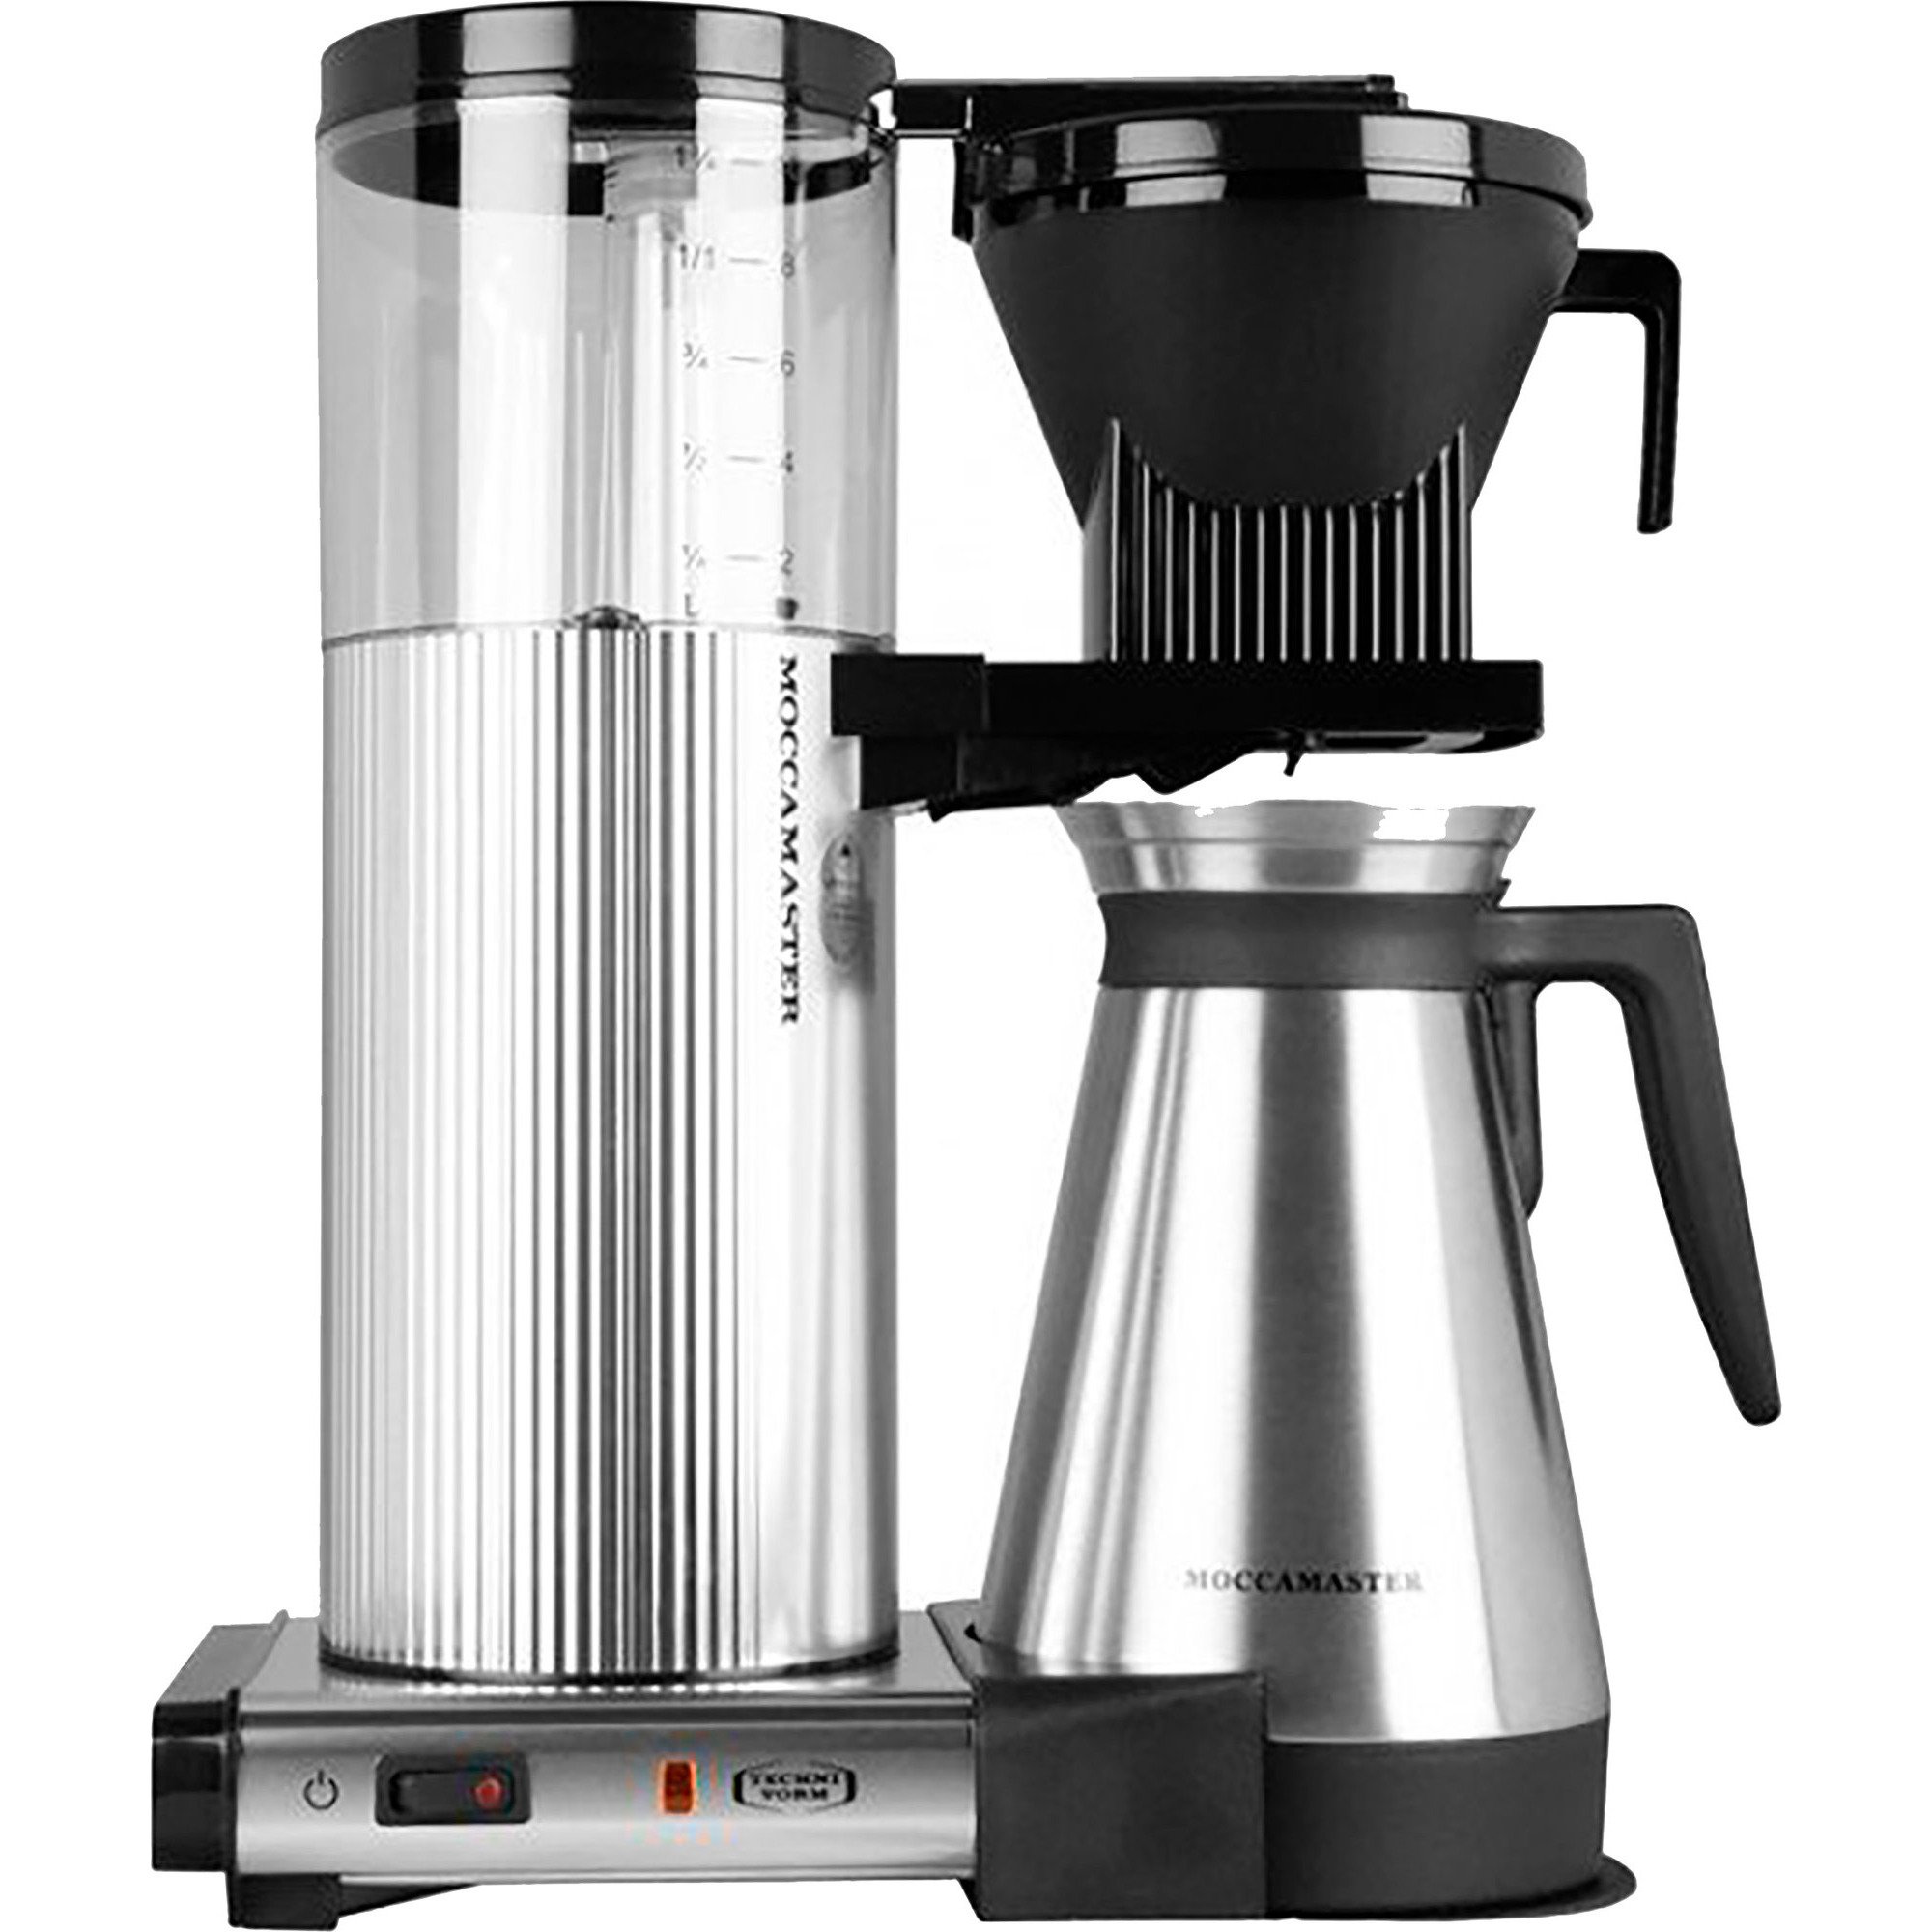 #1 på vores liste over kaffemaskiner er Kaffemaskine